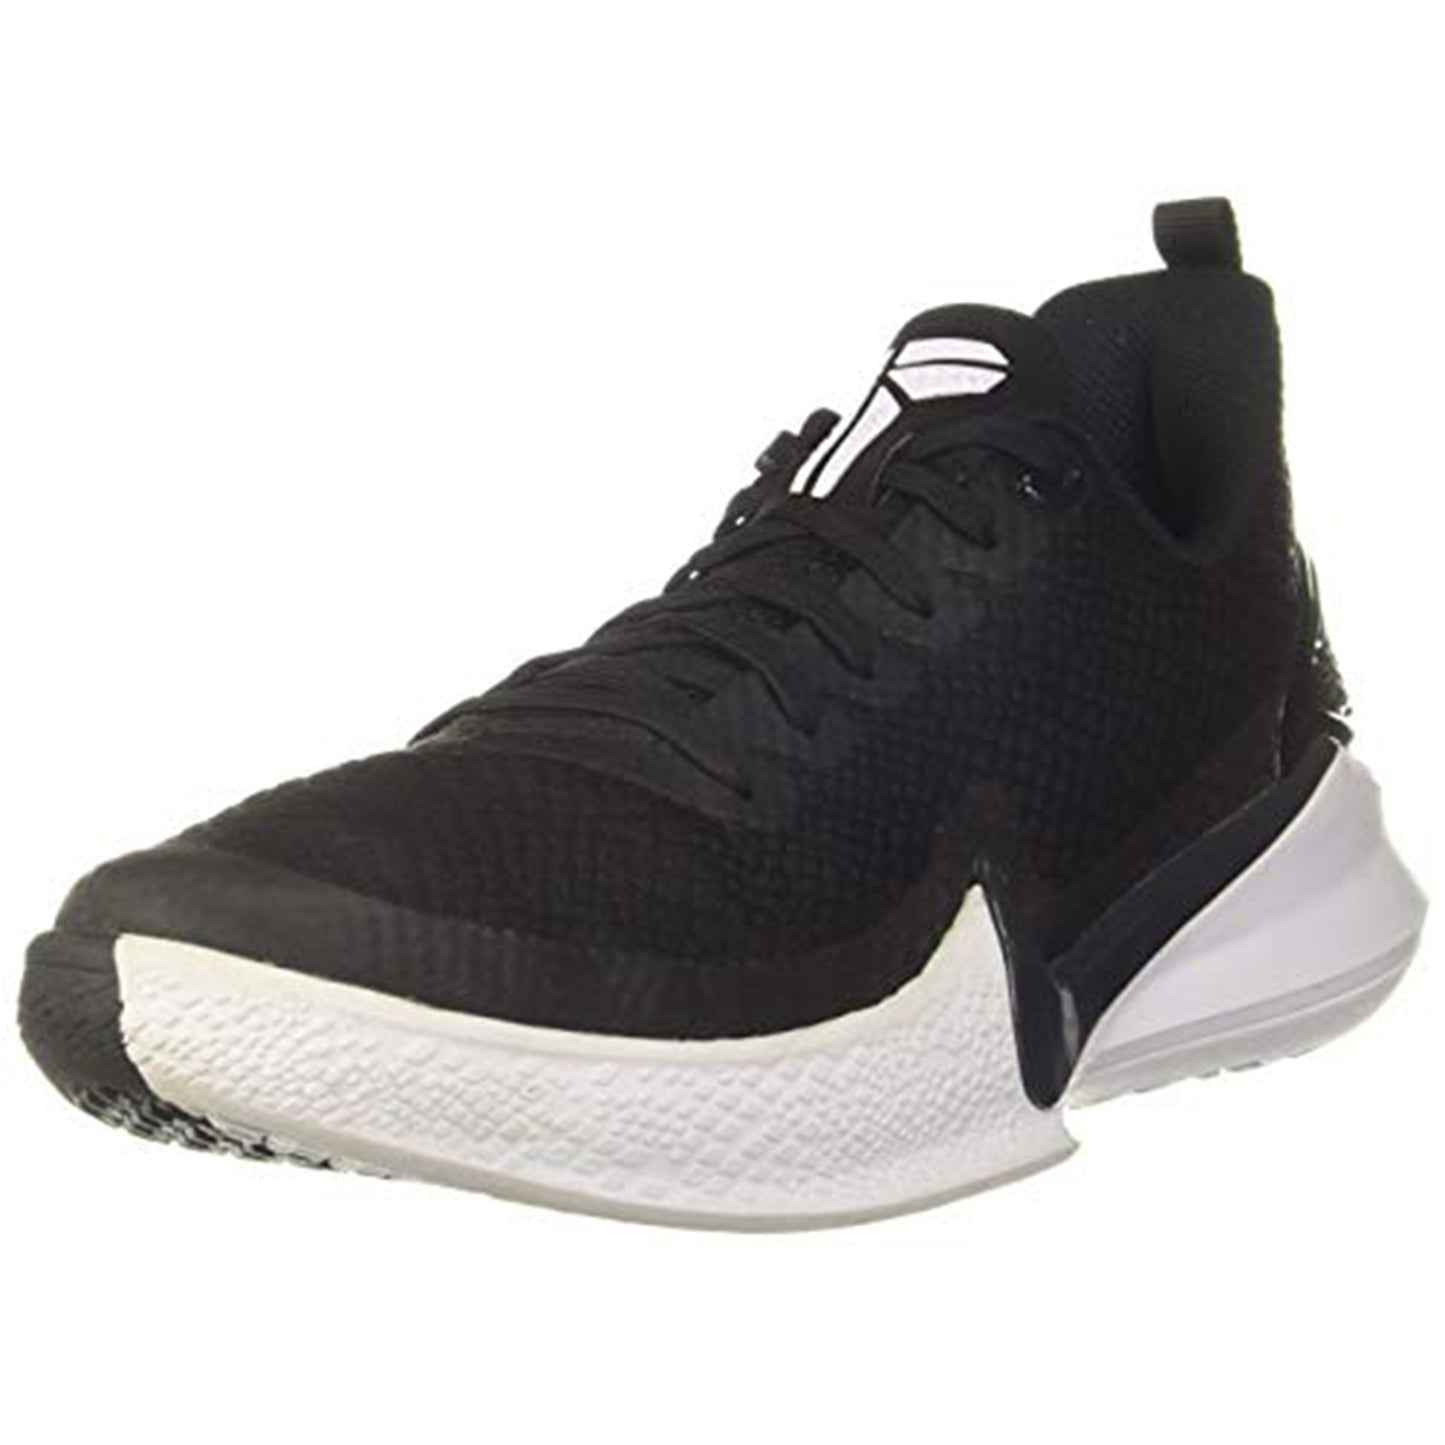 Nike Men's Kobe Mamba Focus Size 8 - AJ5899-002 Black/Anthracite/White